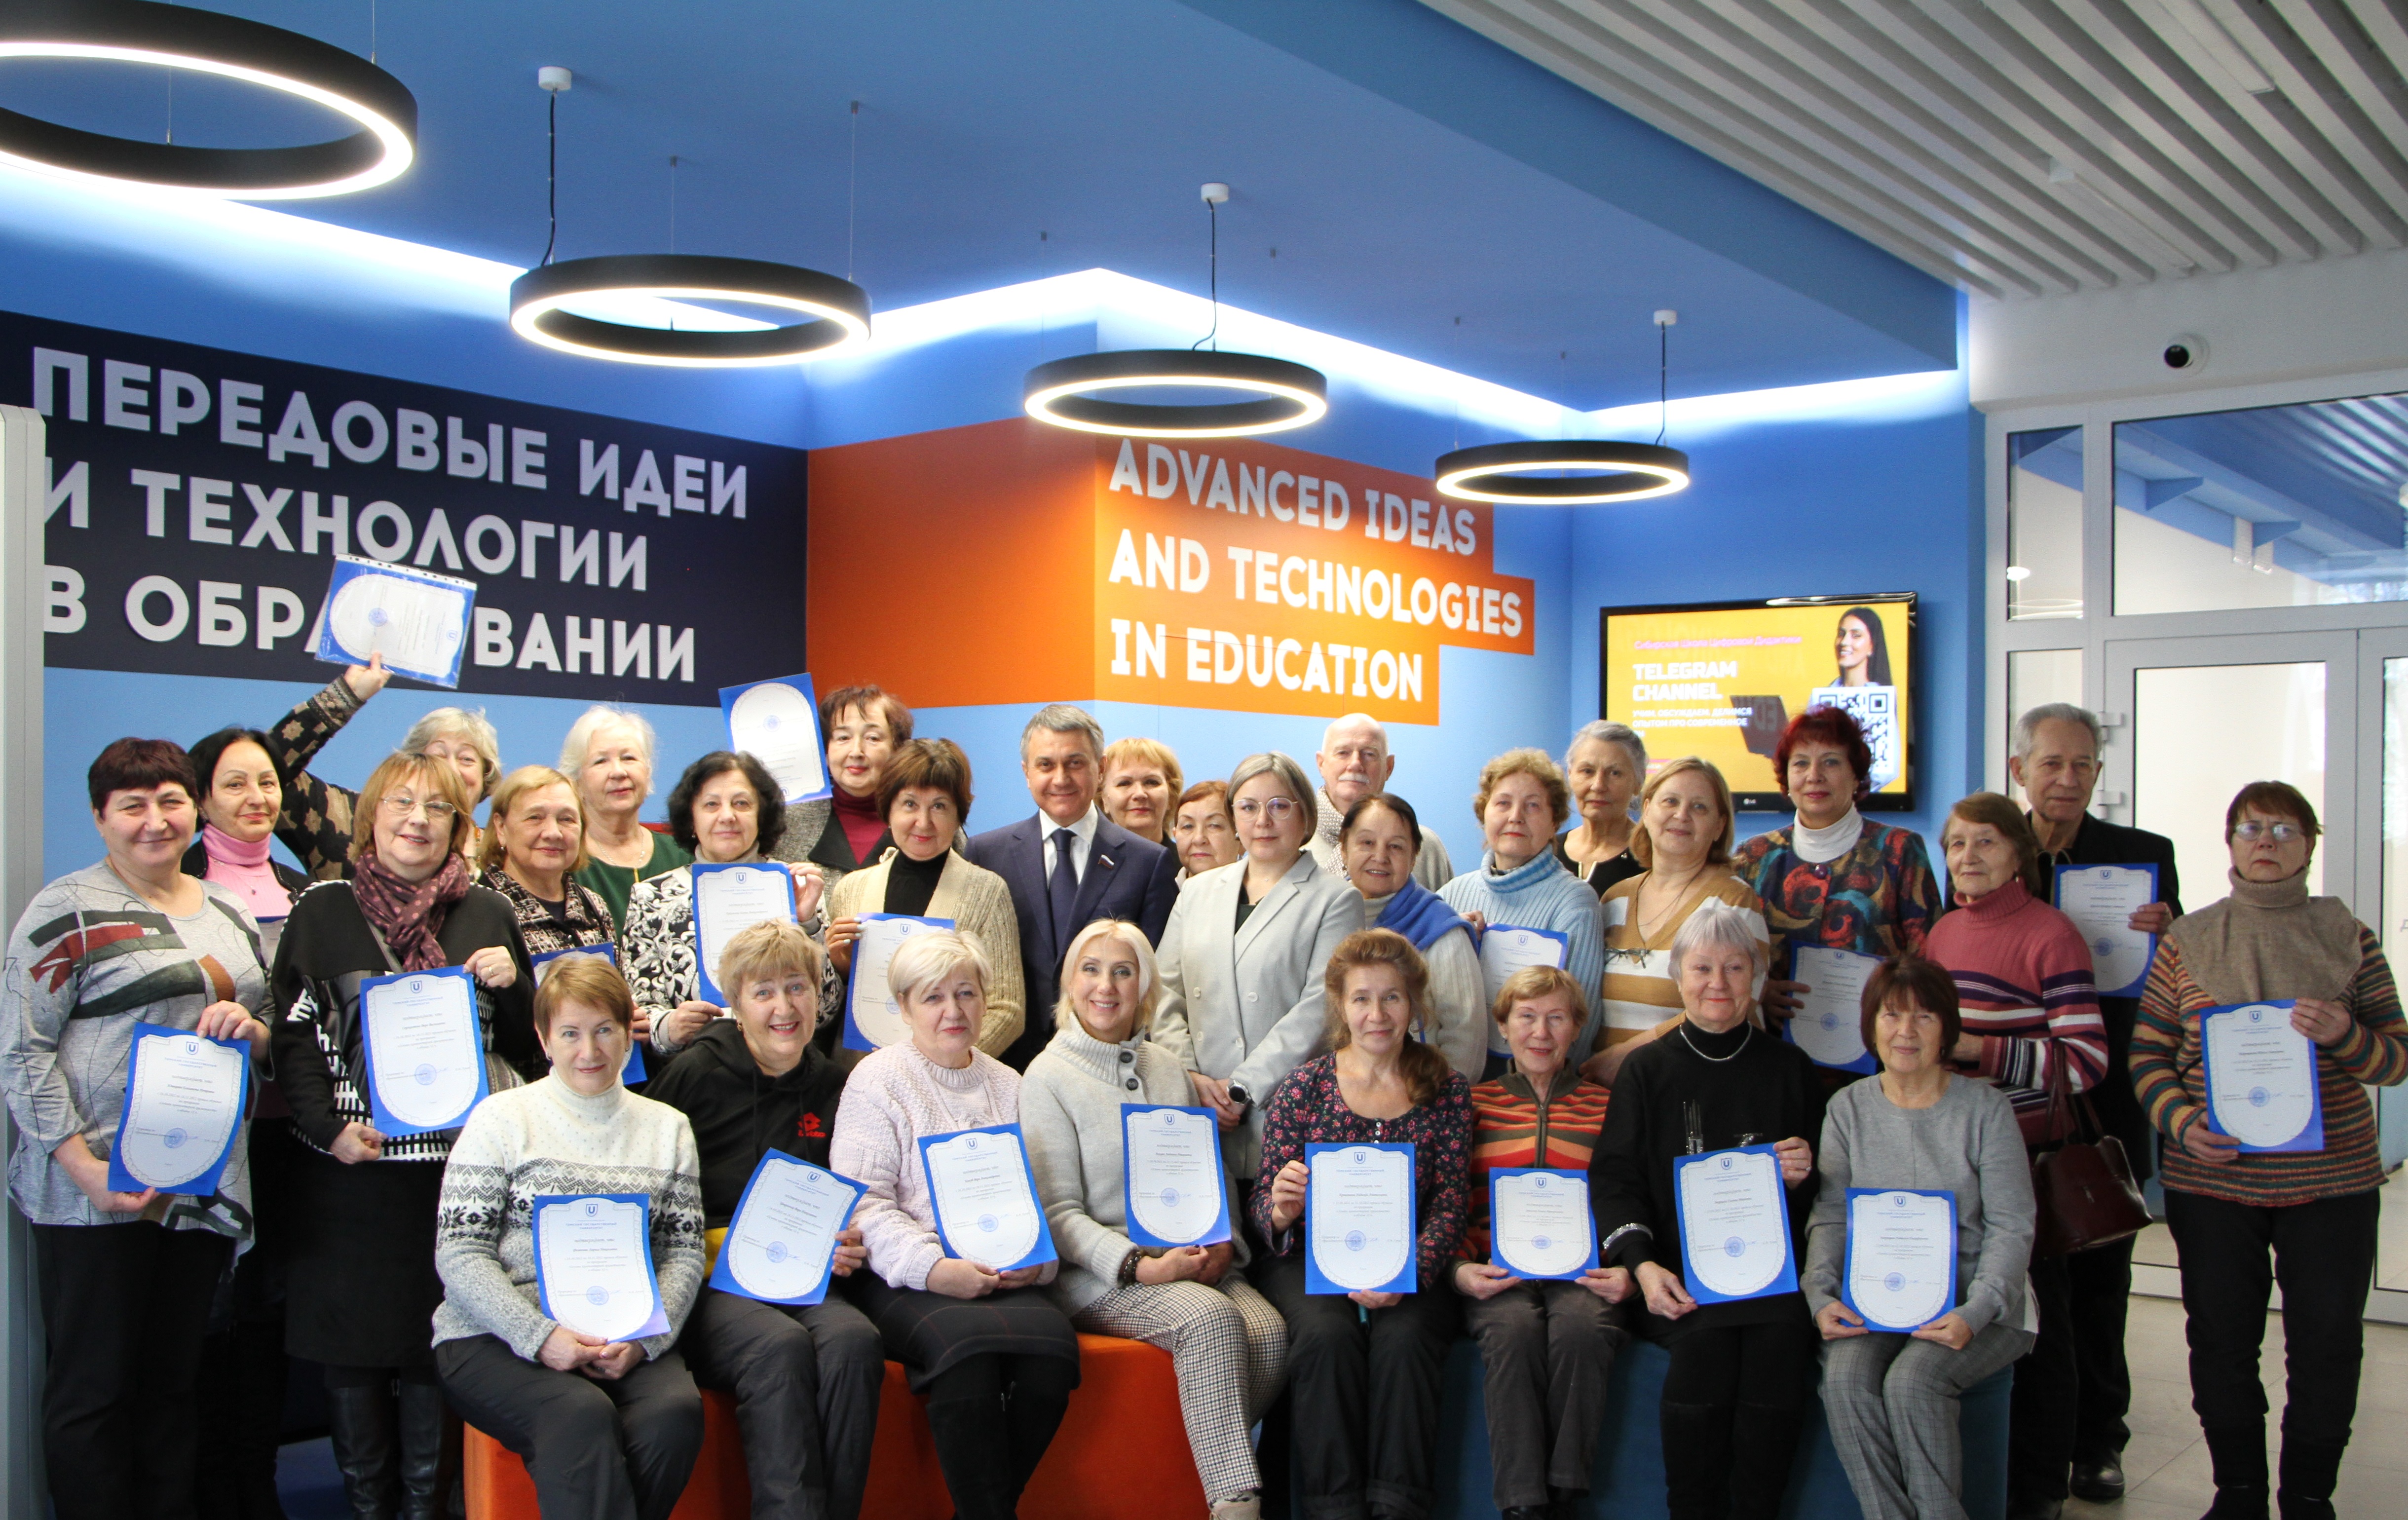 Пенсионеры Томска прошли обучение по программе «Основы компьютерной грамотности» на базе Института дистанционного образования ТГУ